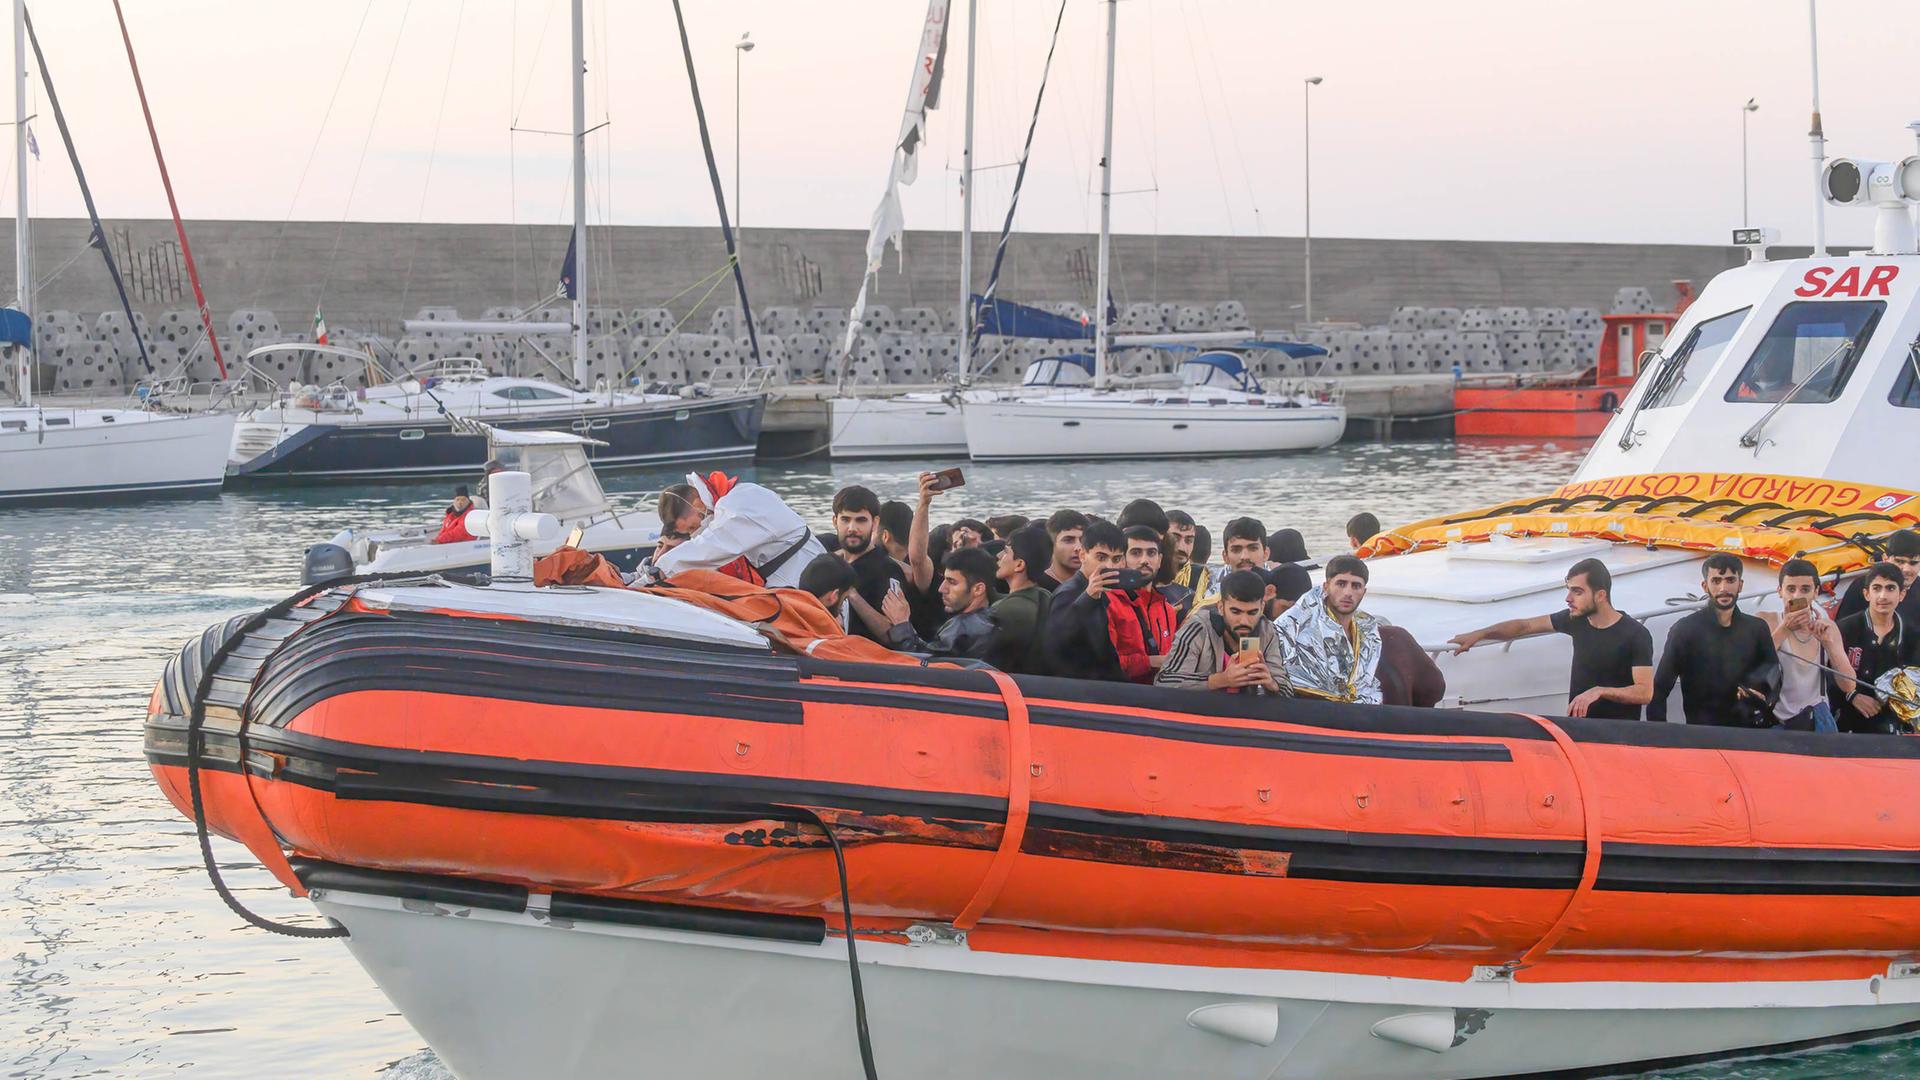 Flüchtlinge stehen auf einem Rettungsboot, das in einen Hafen an der italienischen Küste einfährt.